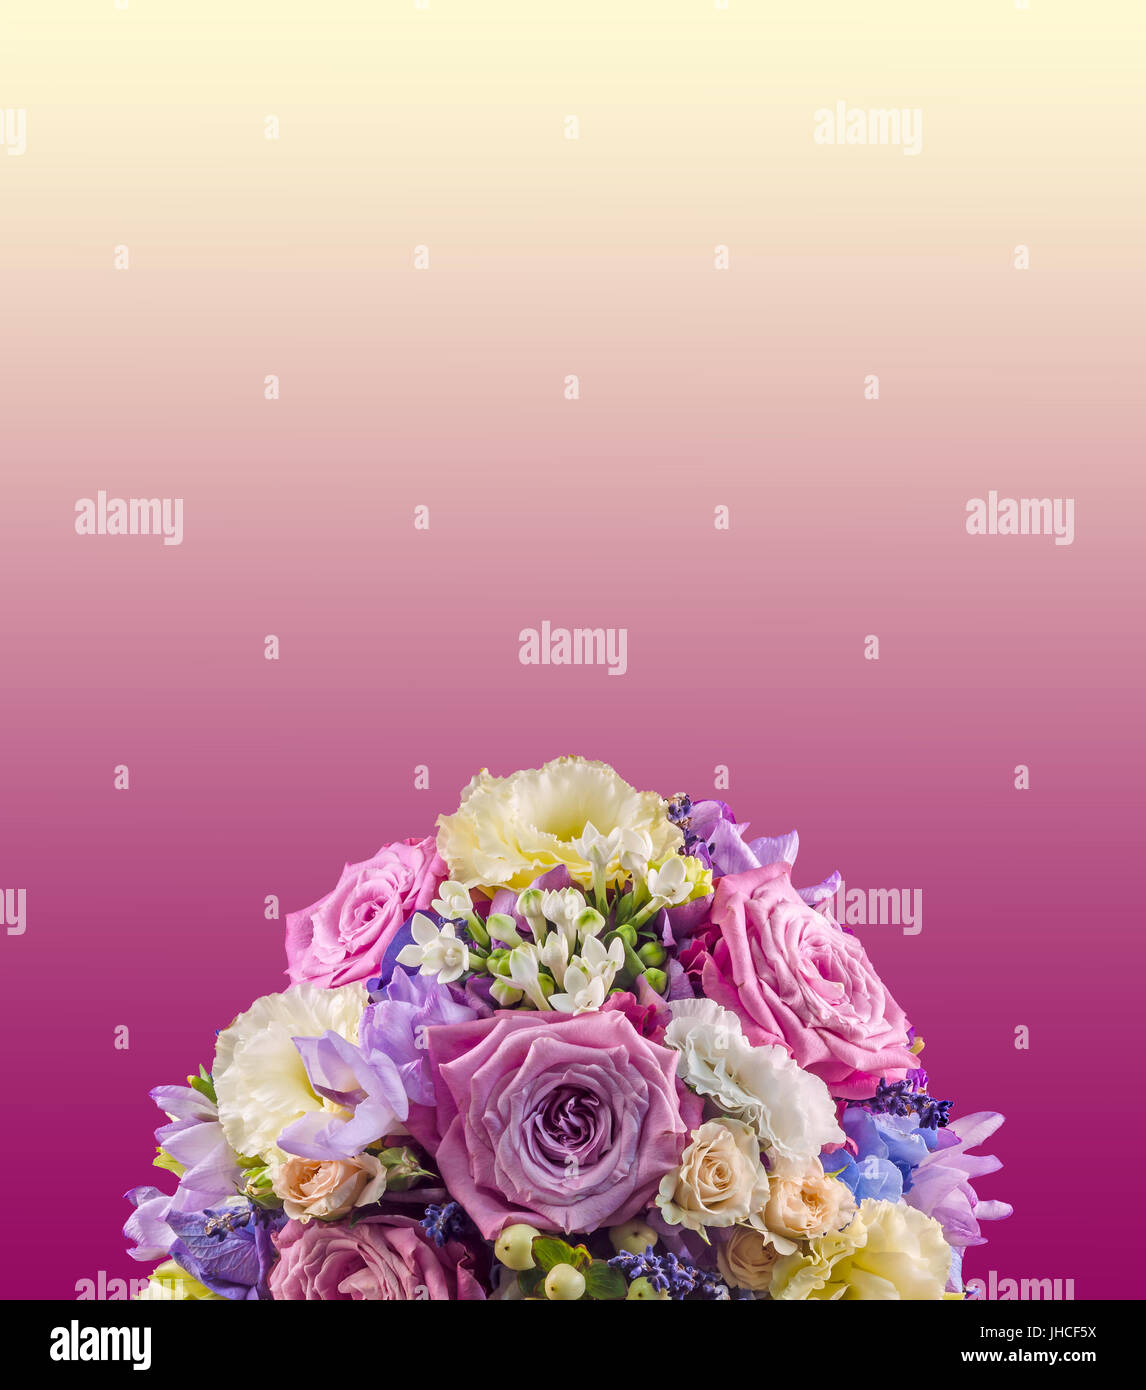 Lebendige Blumenarrangement mit lila Rosen und Hydrangea Hortensis, Hochzeitsstrauß, isoliert Stockfoto